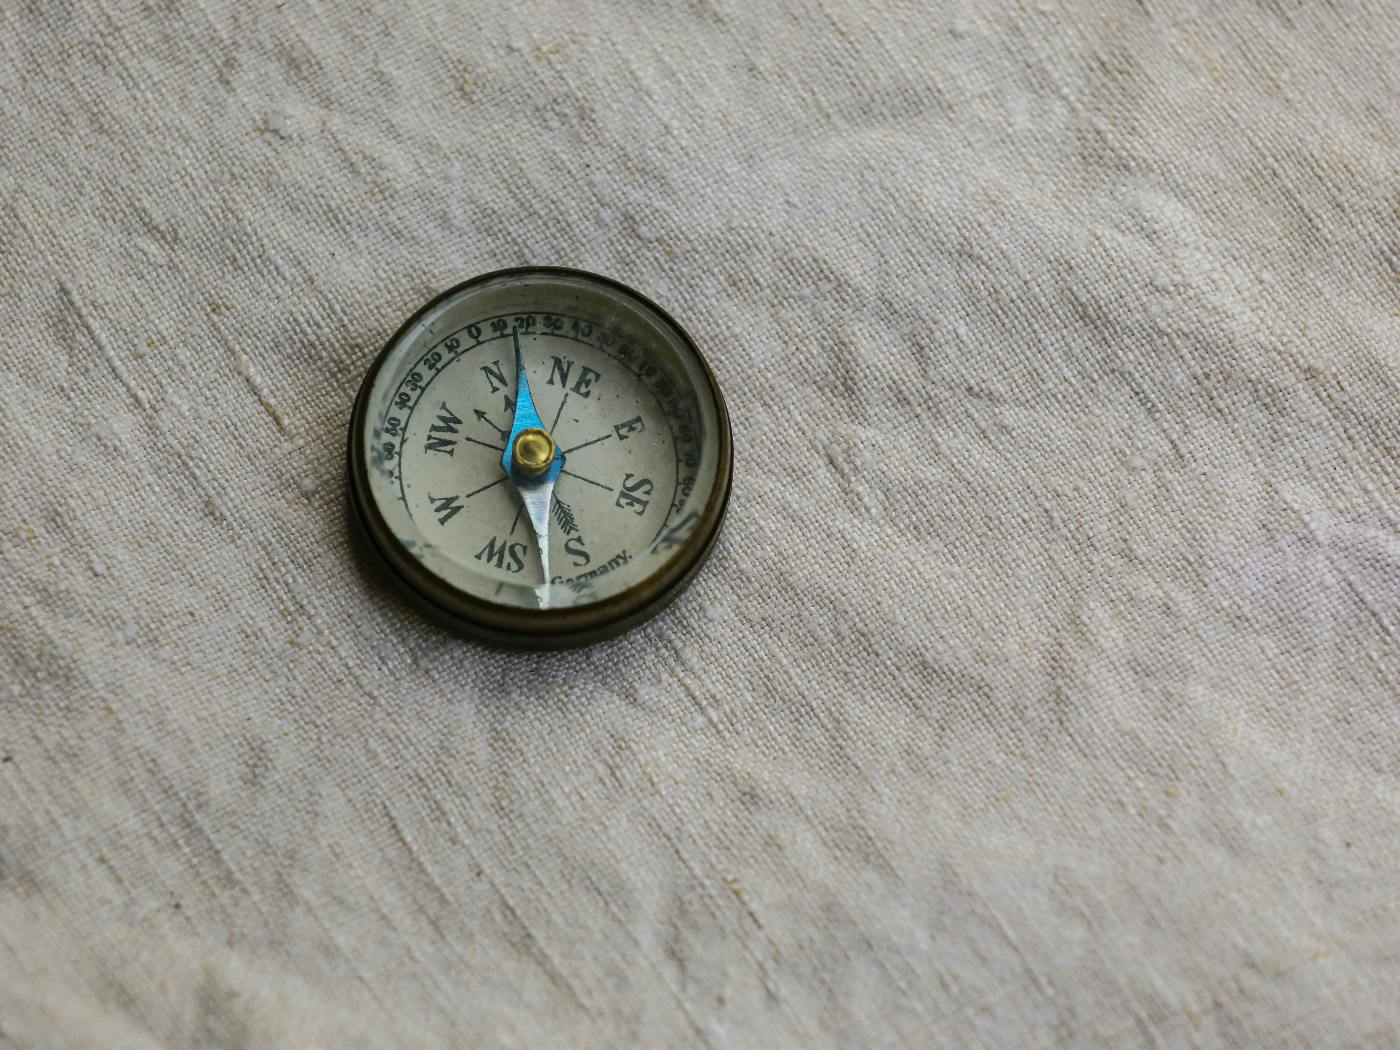 A compass on linen